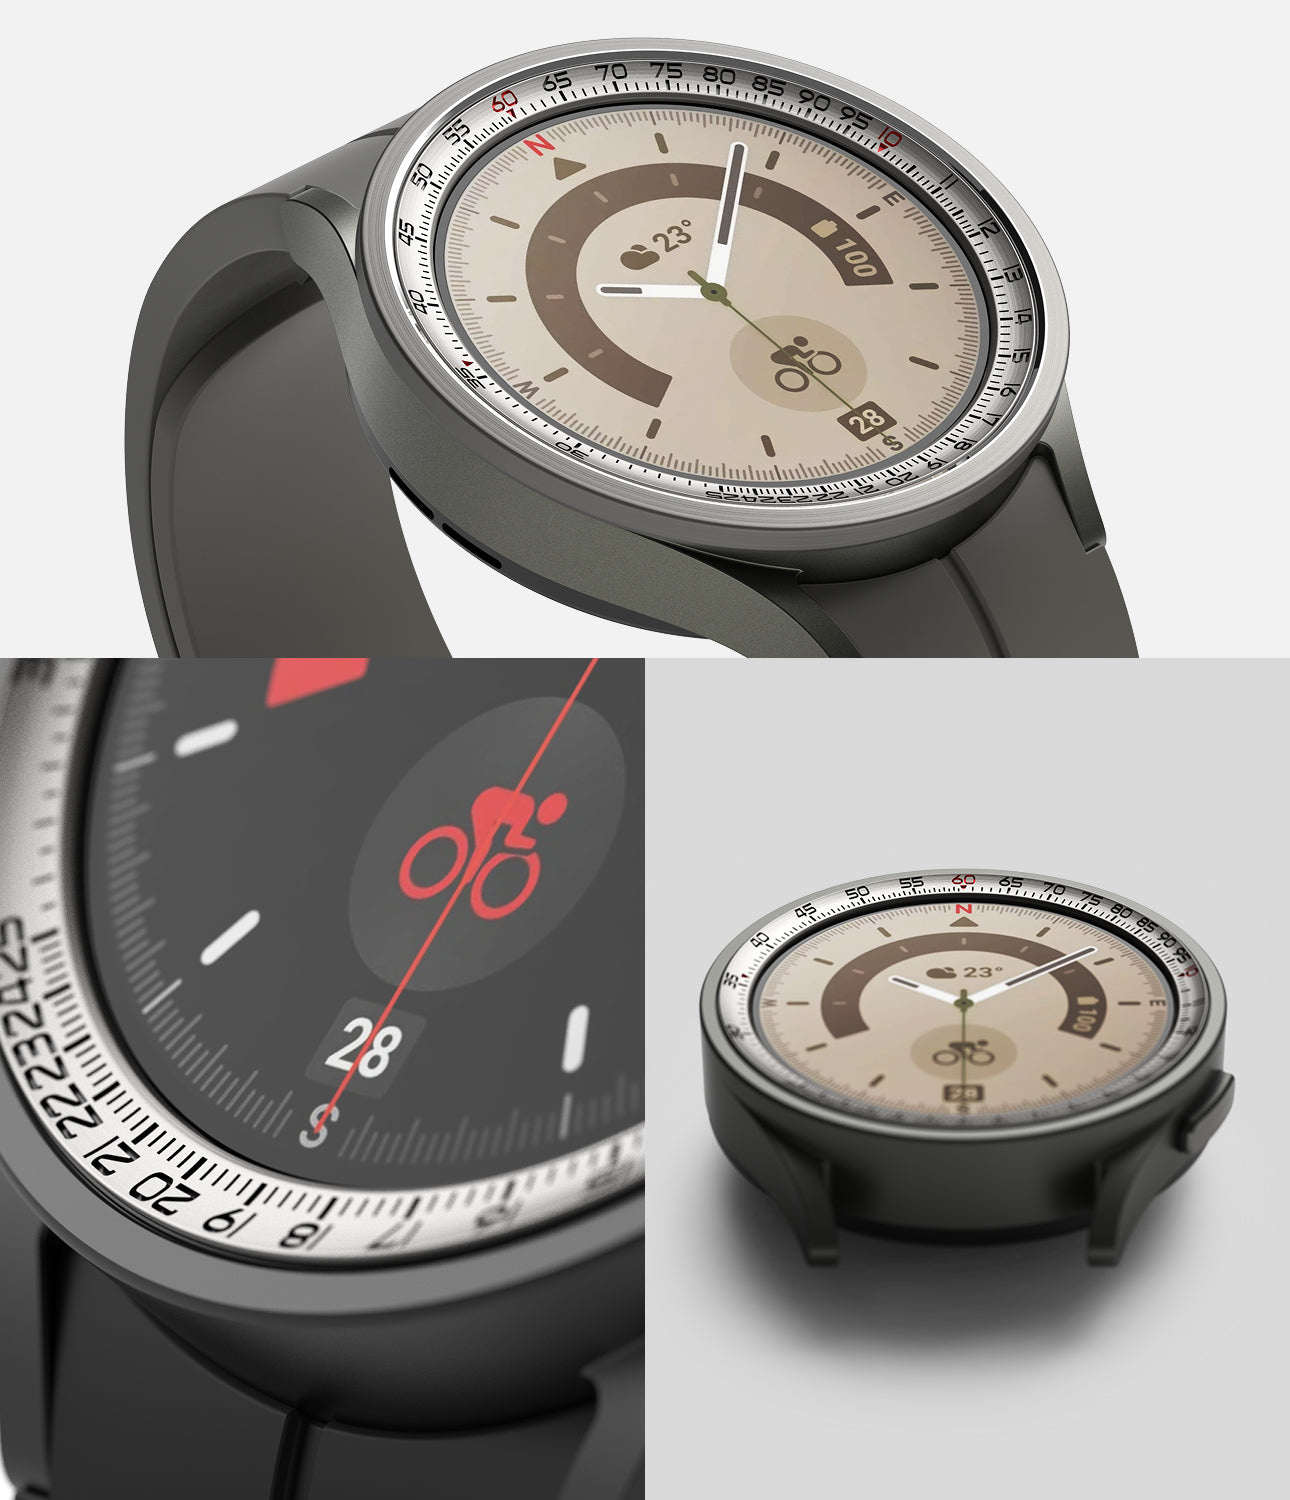 Galaxy Watch 5 Pro 45mm | Inner Bezel Styling 45-IN-03